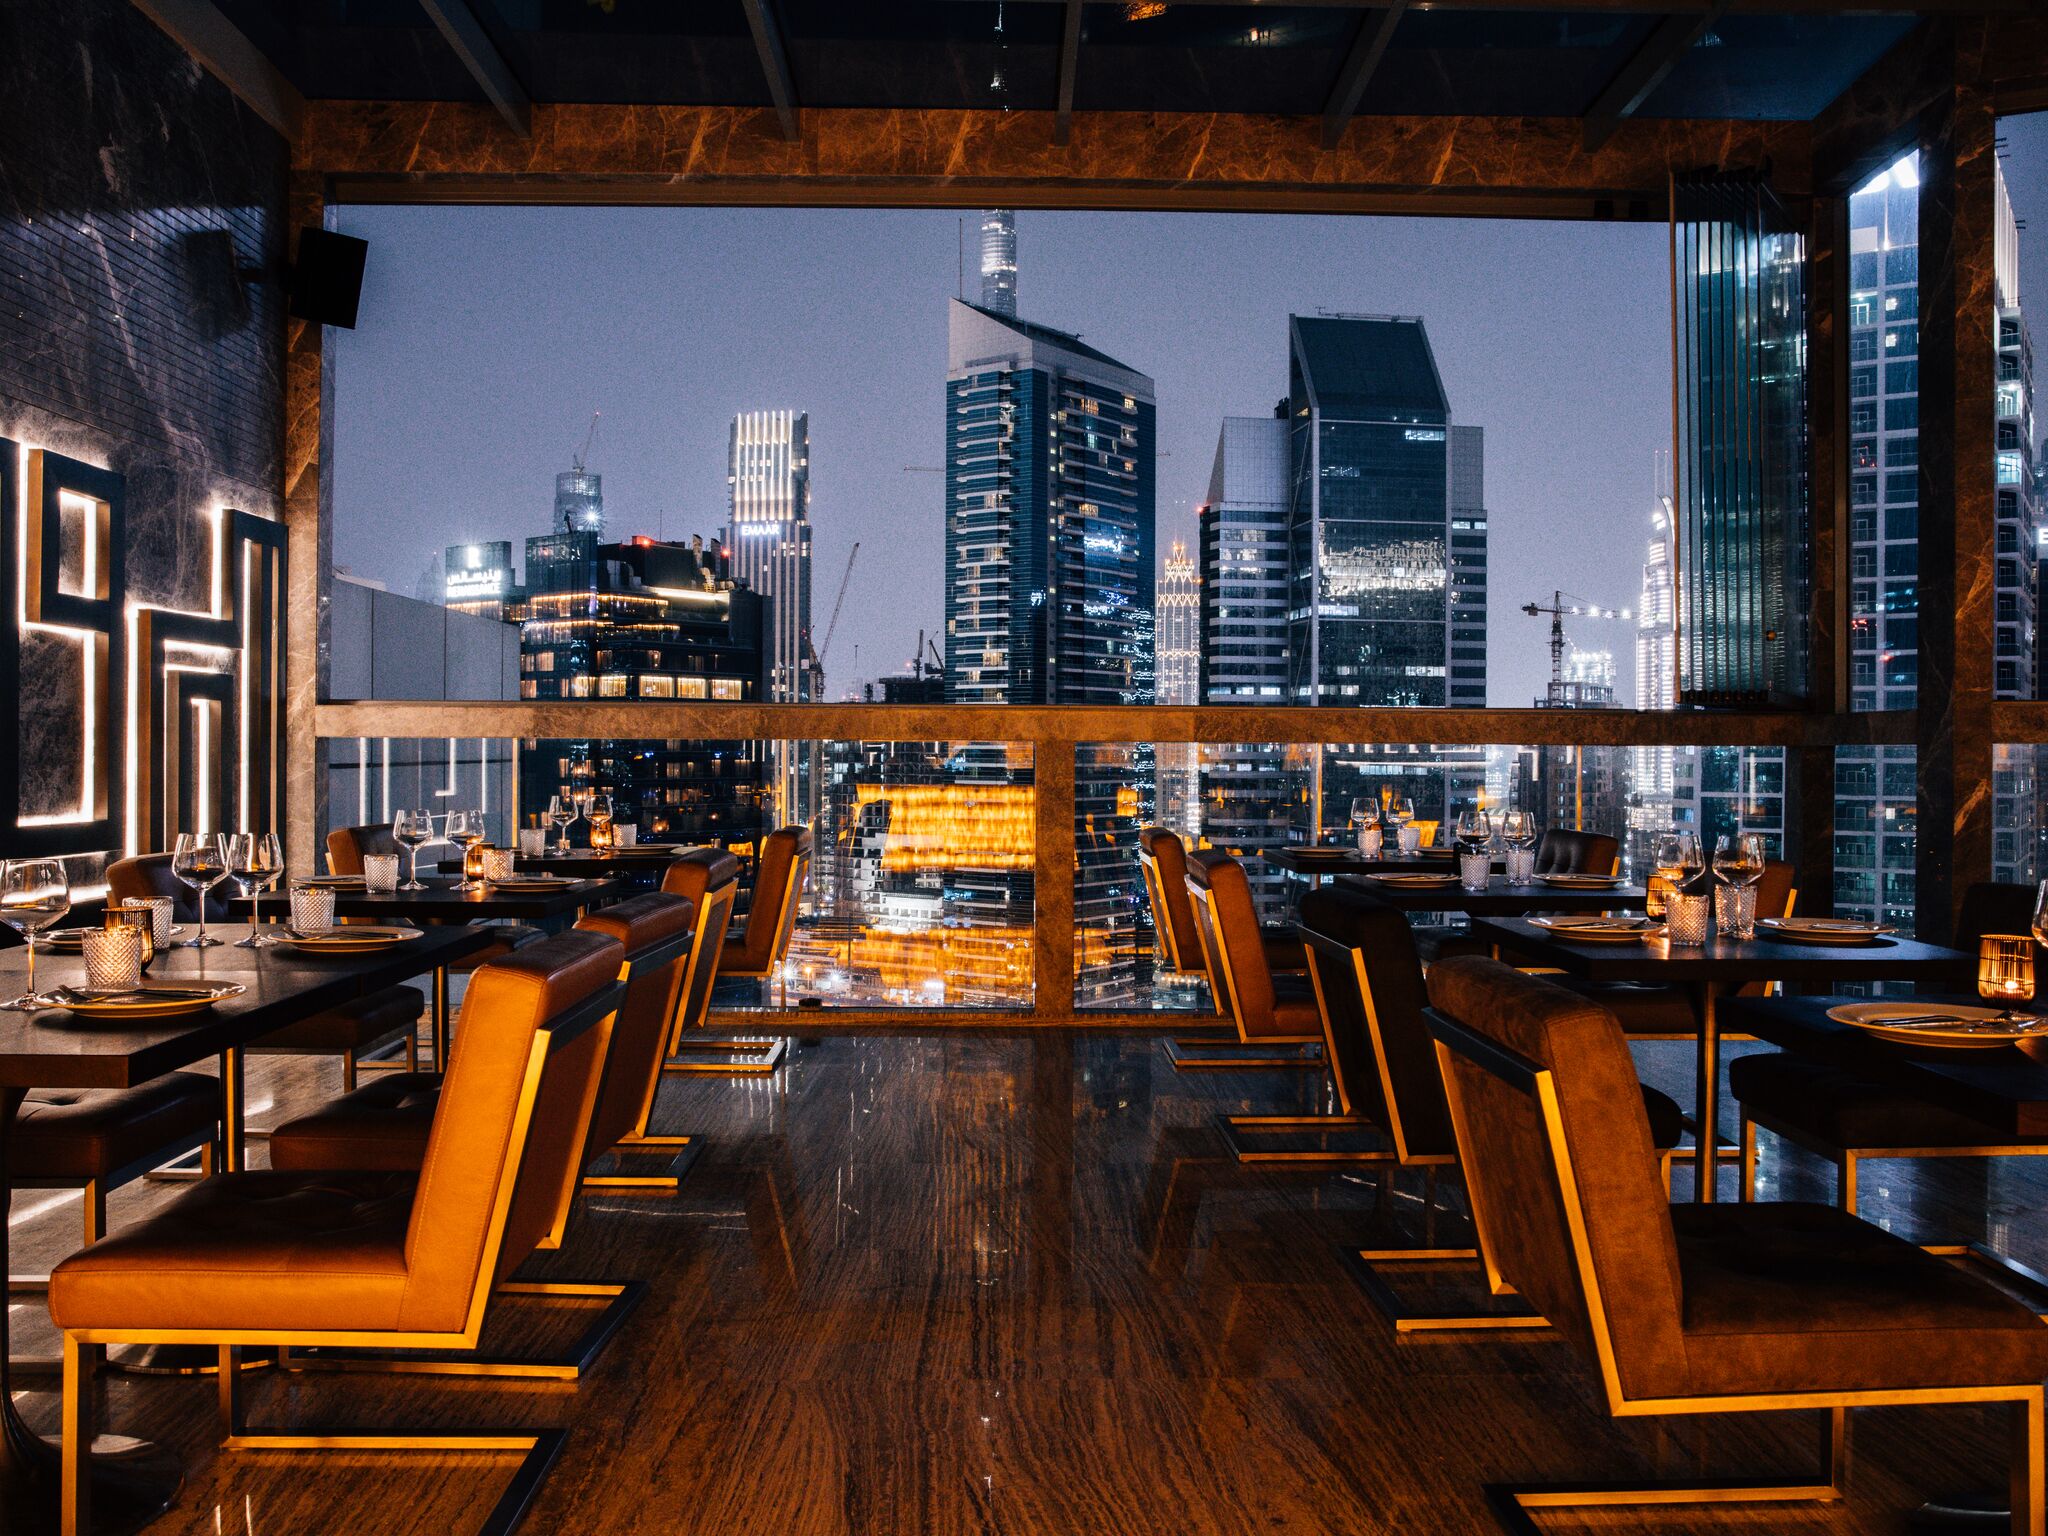 مطعم تشينغون دبي يطلق برانش يوم السبت ايل كامينو دي فلوريس 2020